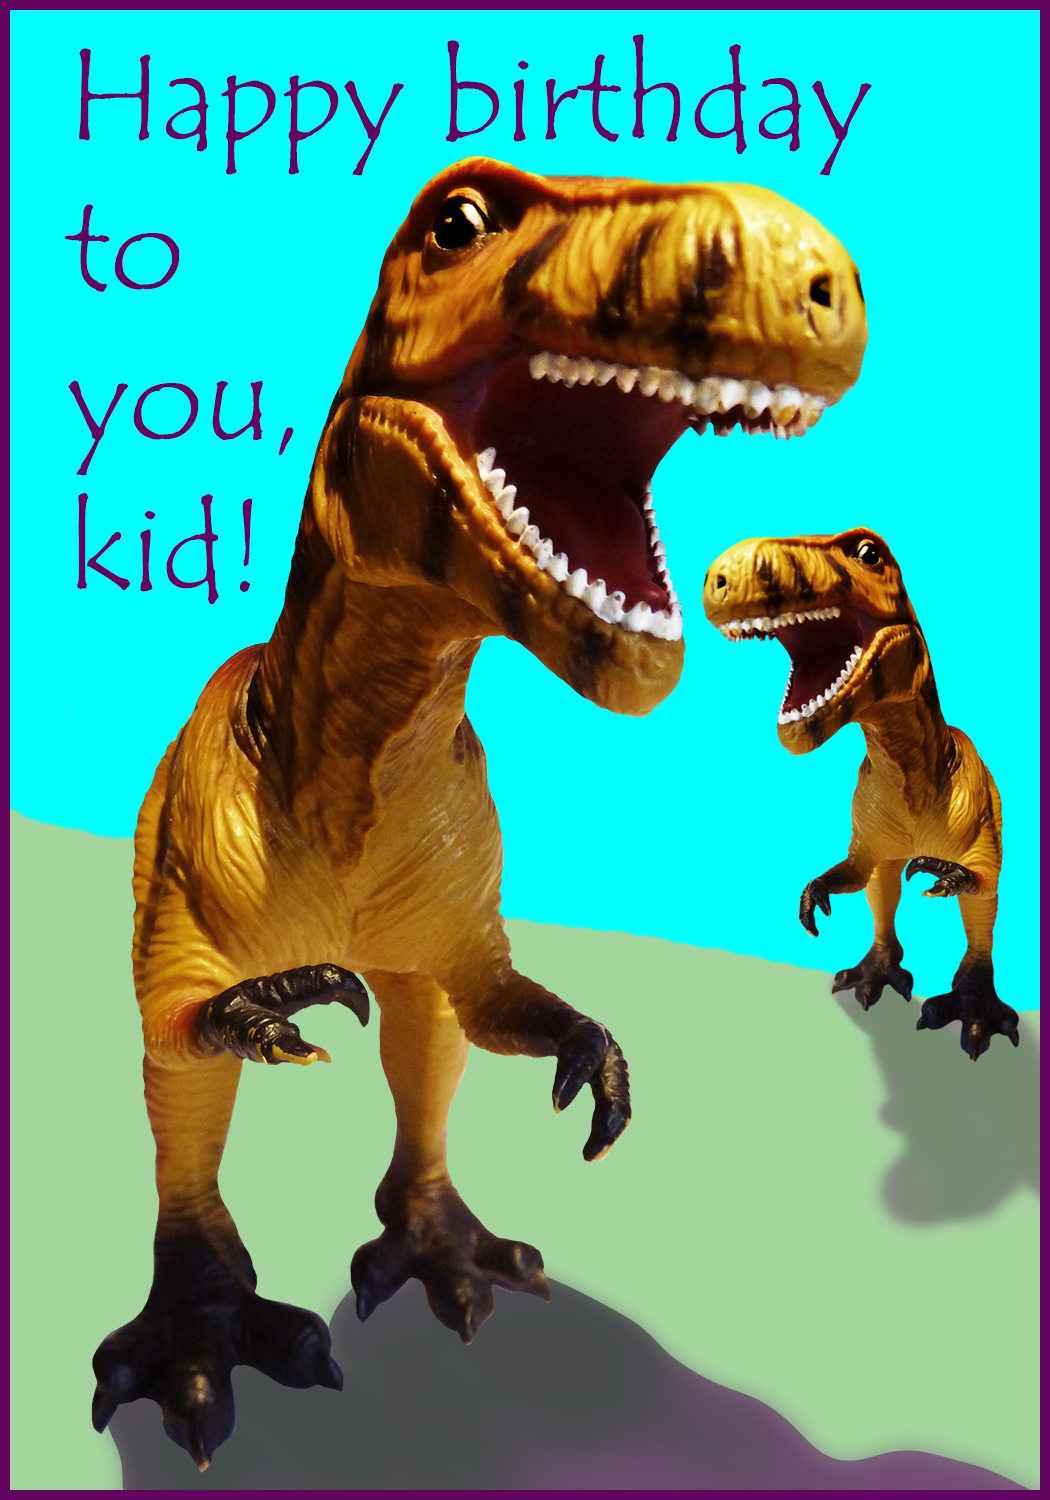 T-rex birthday card